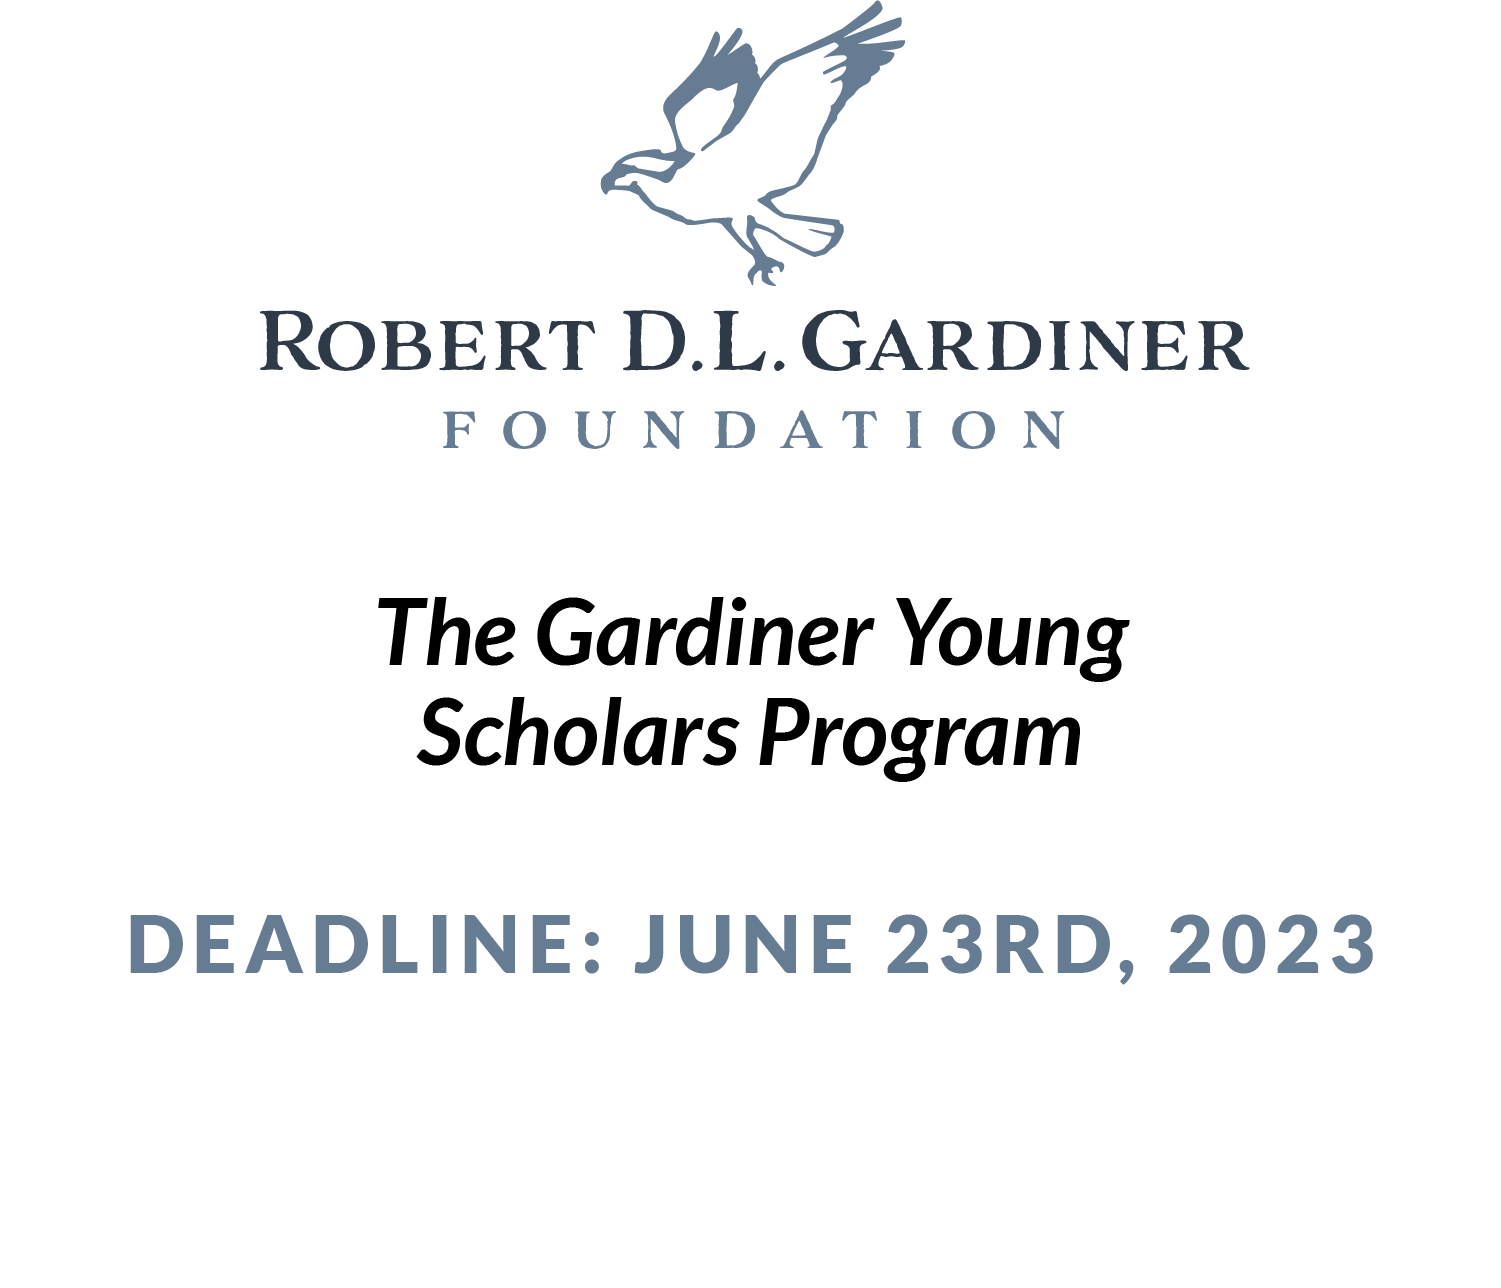 The Gardiner Young Scholars Program